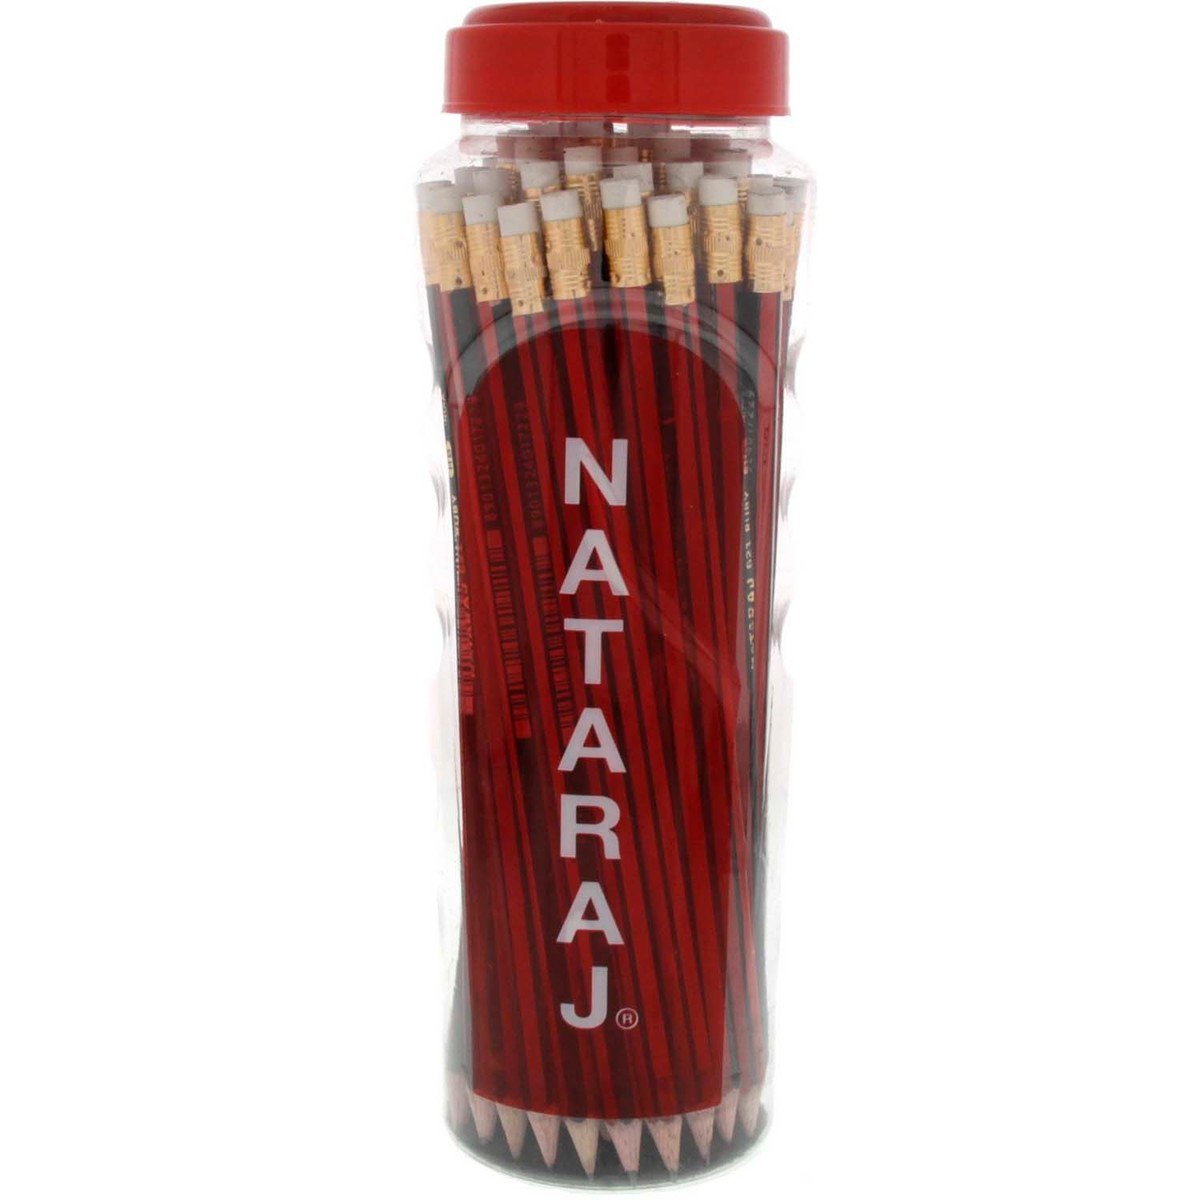 Nataraj 621 HB Pencil 48's With Jar